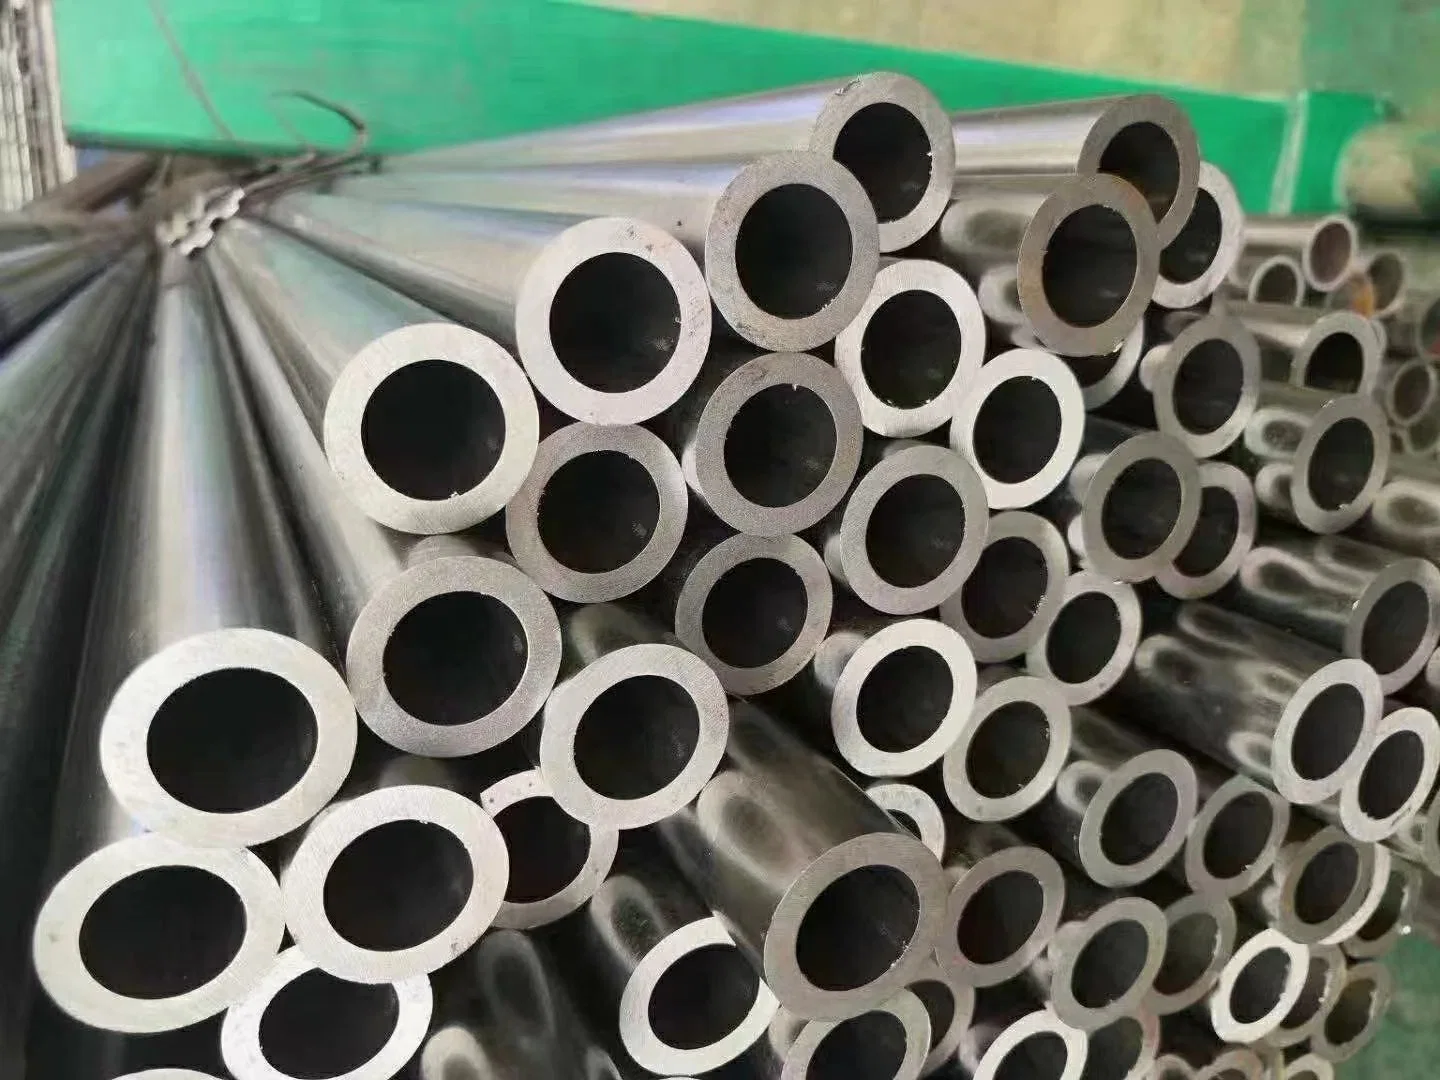 ASTM стандарт DIN холодной холодной обращено точного бесшовных стальных трубопроводов производитель холодной бесшовных стальных трубки на заводе цена бесшовных стальных трубопроводов